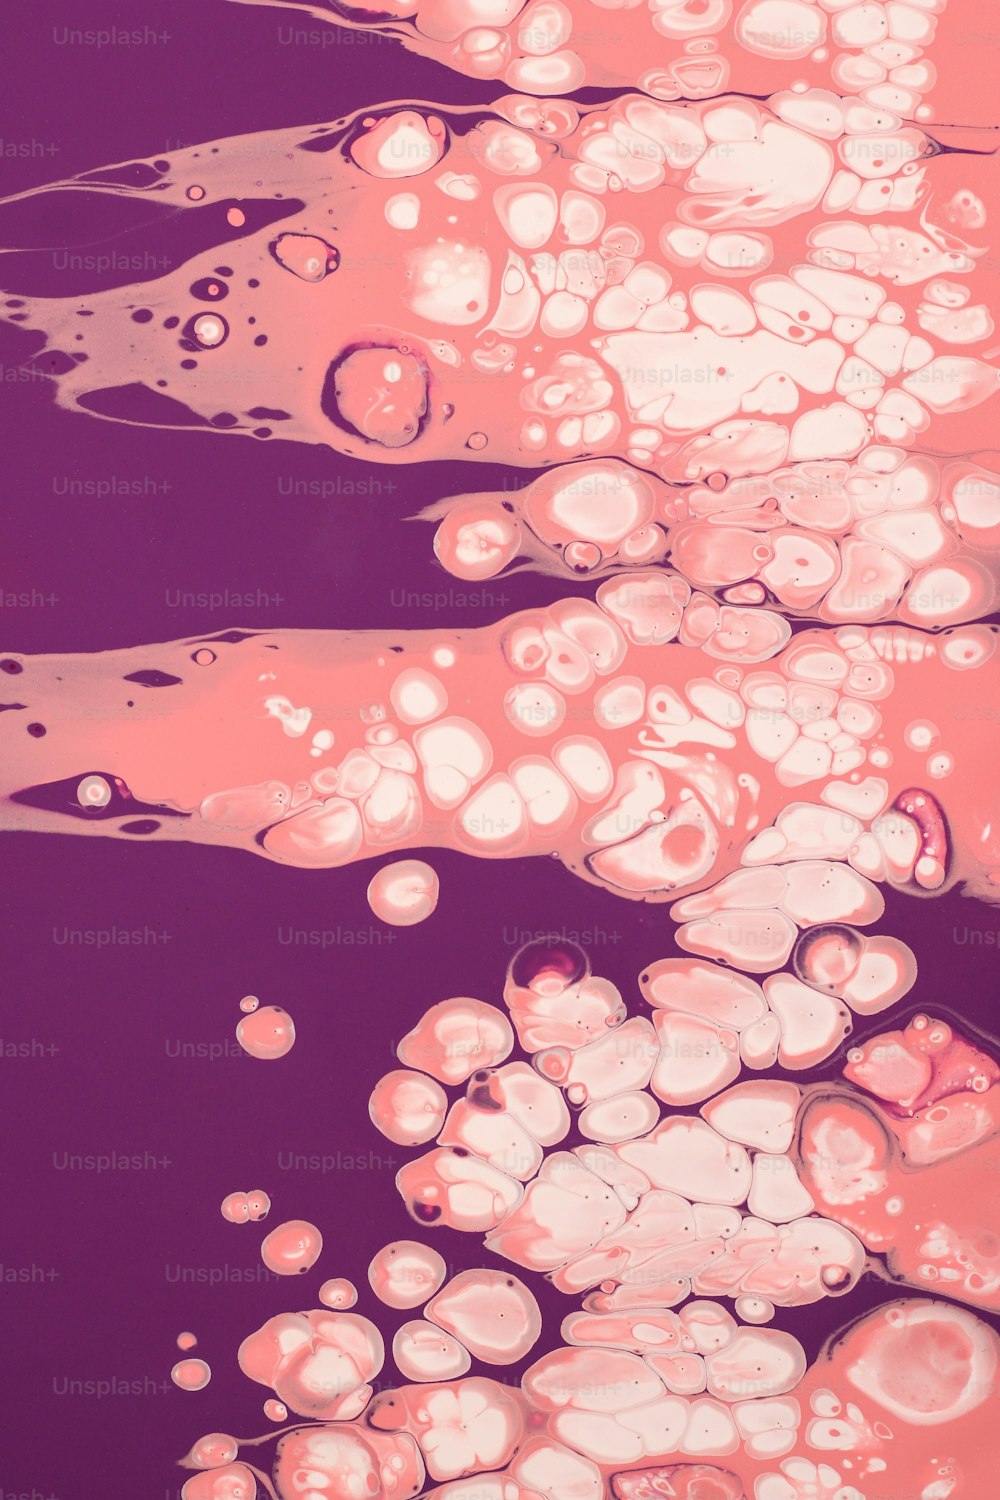 Un grupo de burbujas flotando sobre un cuerpo de agua